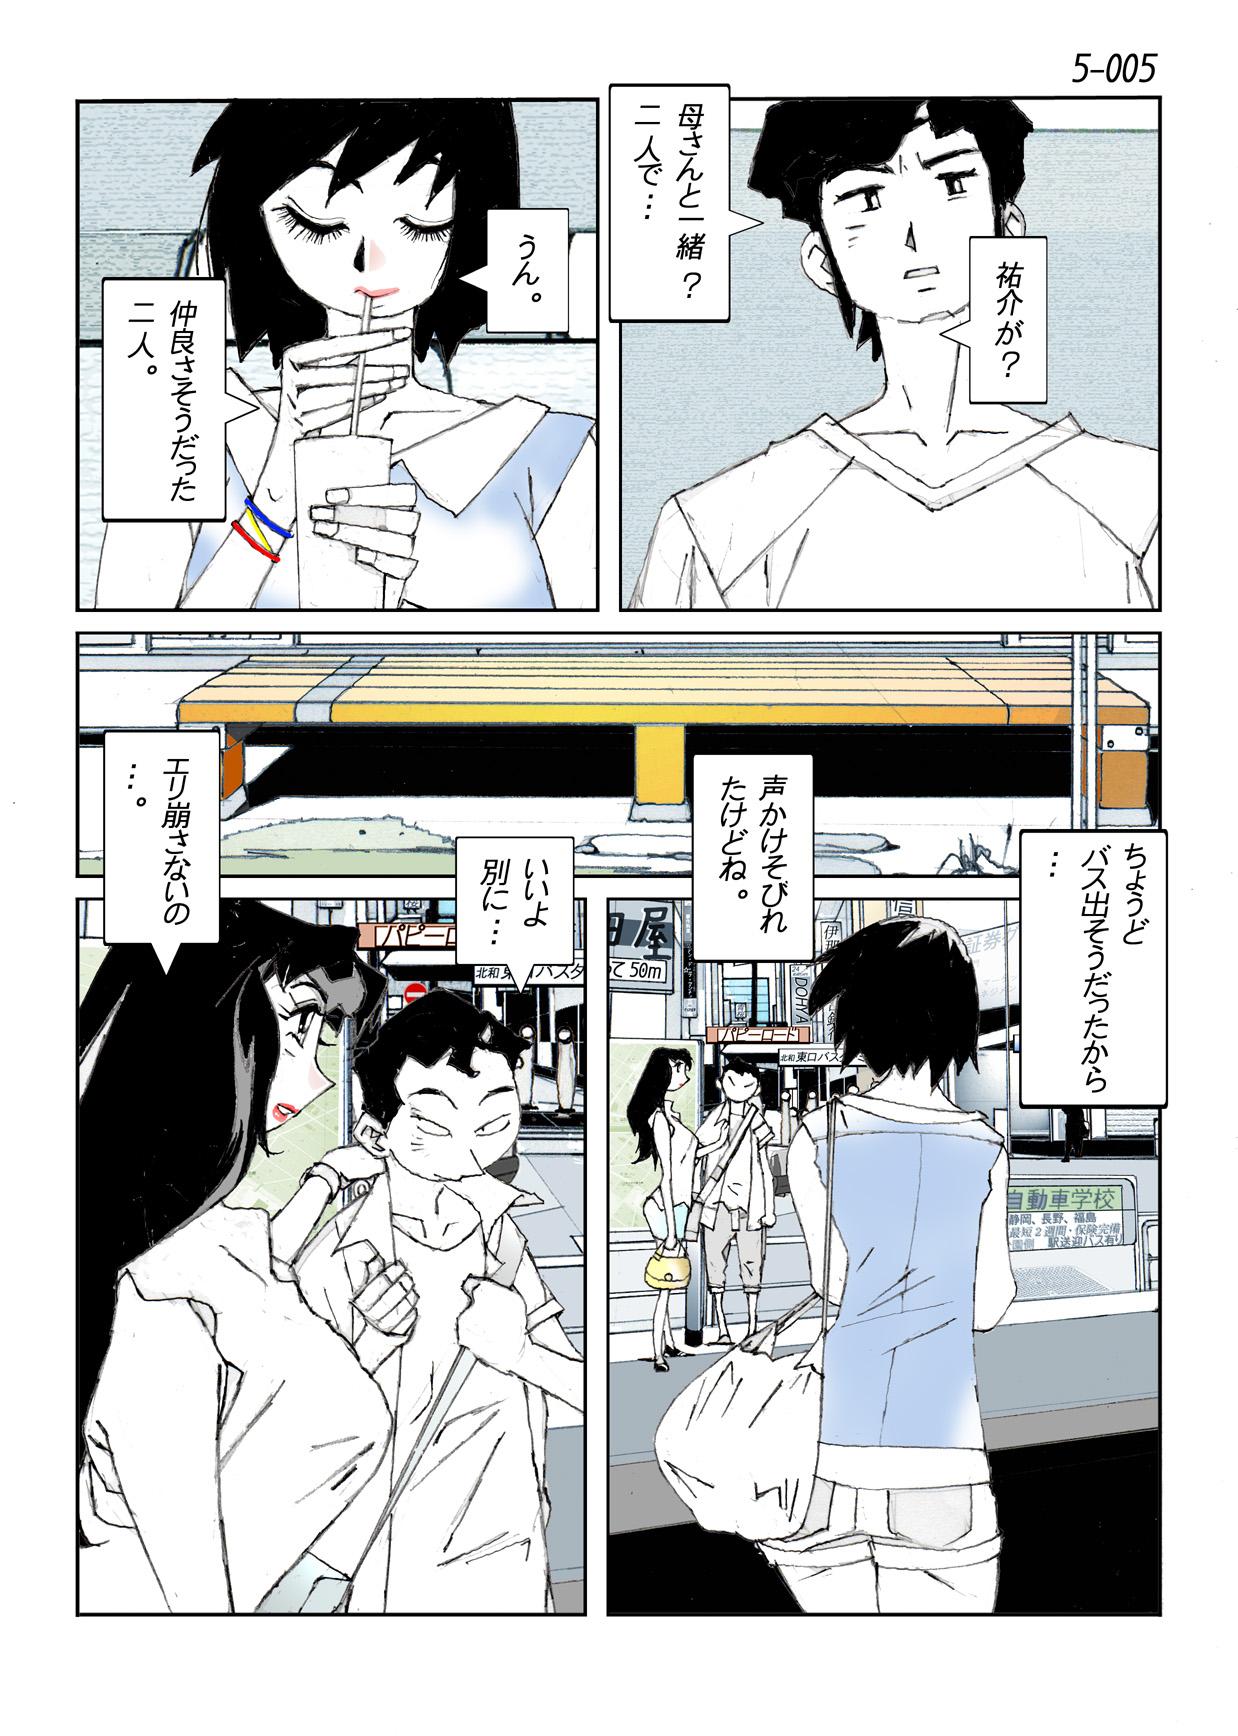 Nylon Kamo no Aji - Misako 5 Stream - Page 7